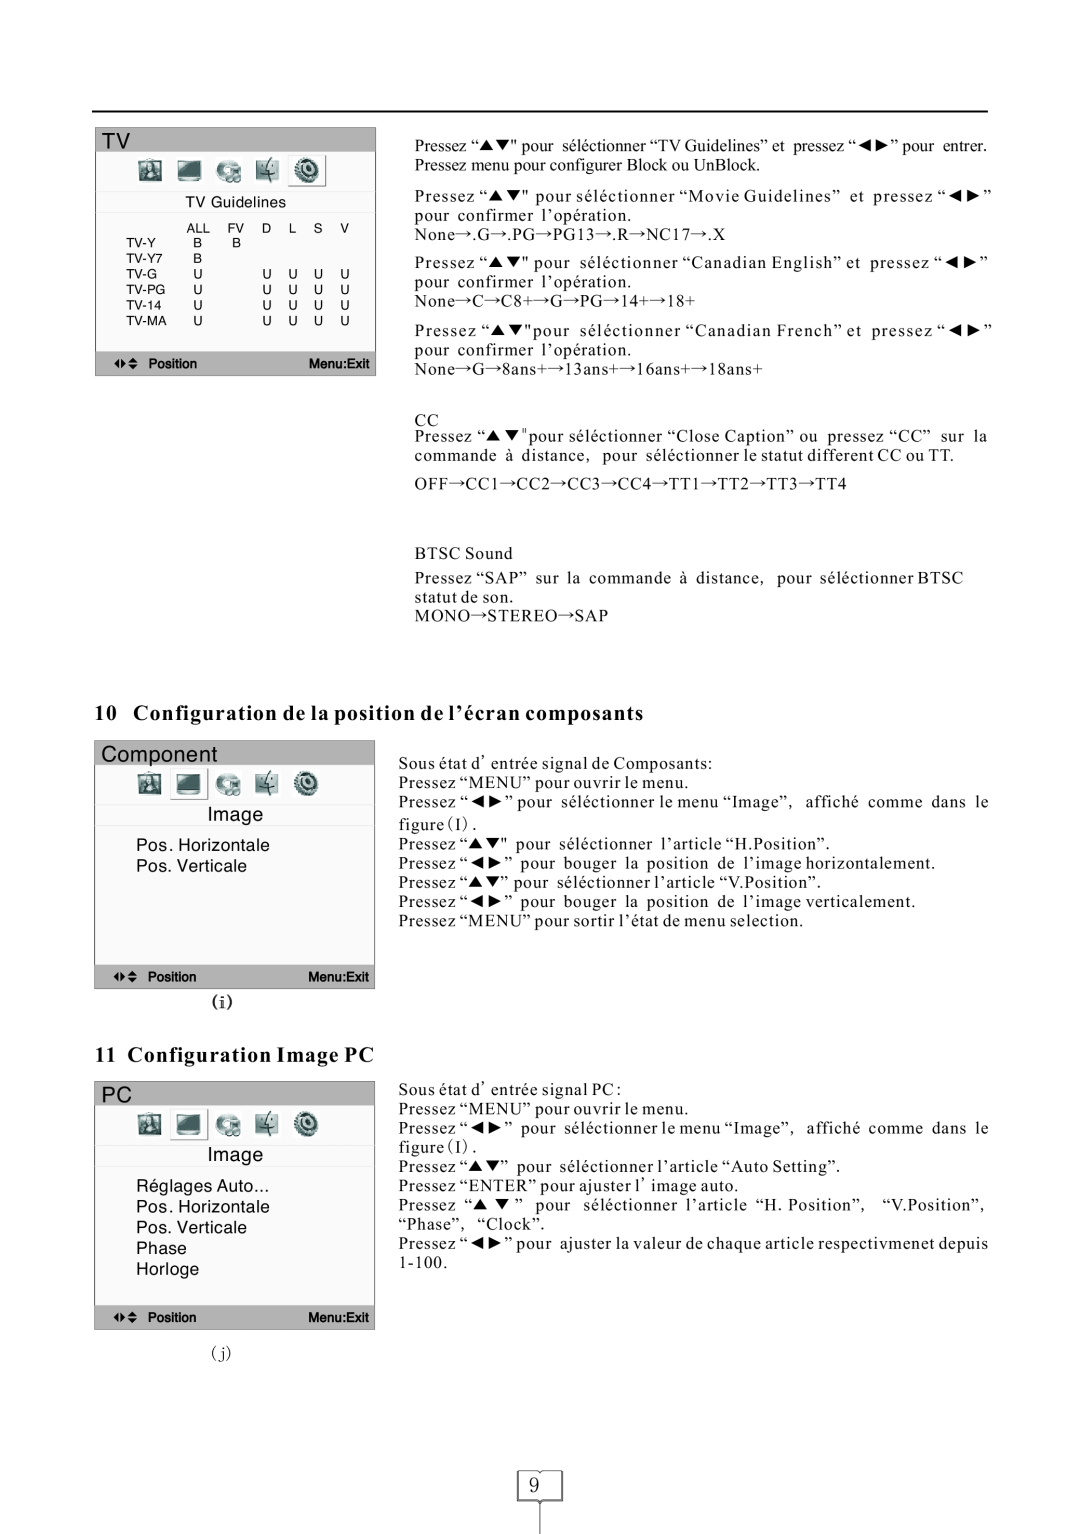 Curtis LCDVD152 manual Component, Configuration de la position de l’écran composants, Configuration Image PC 